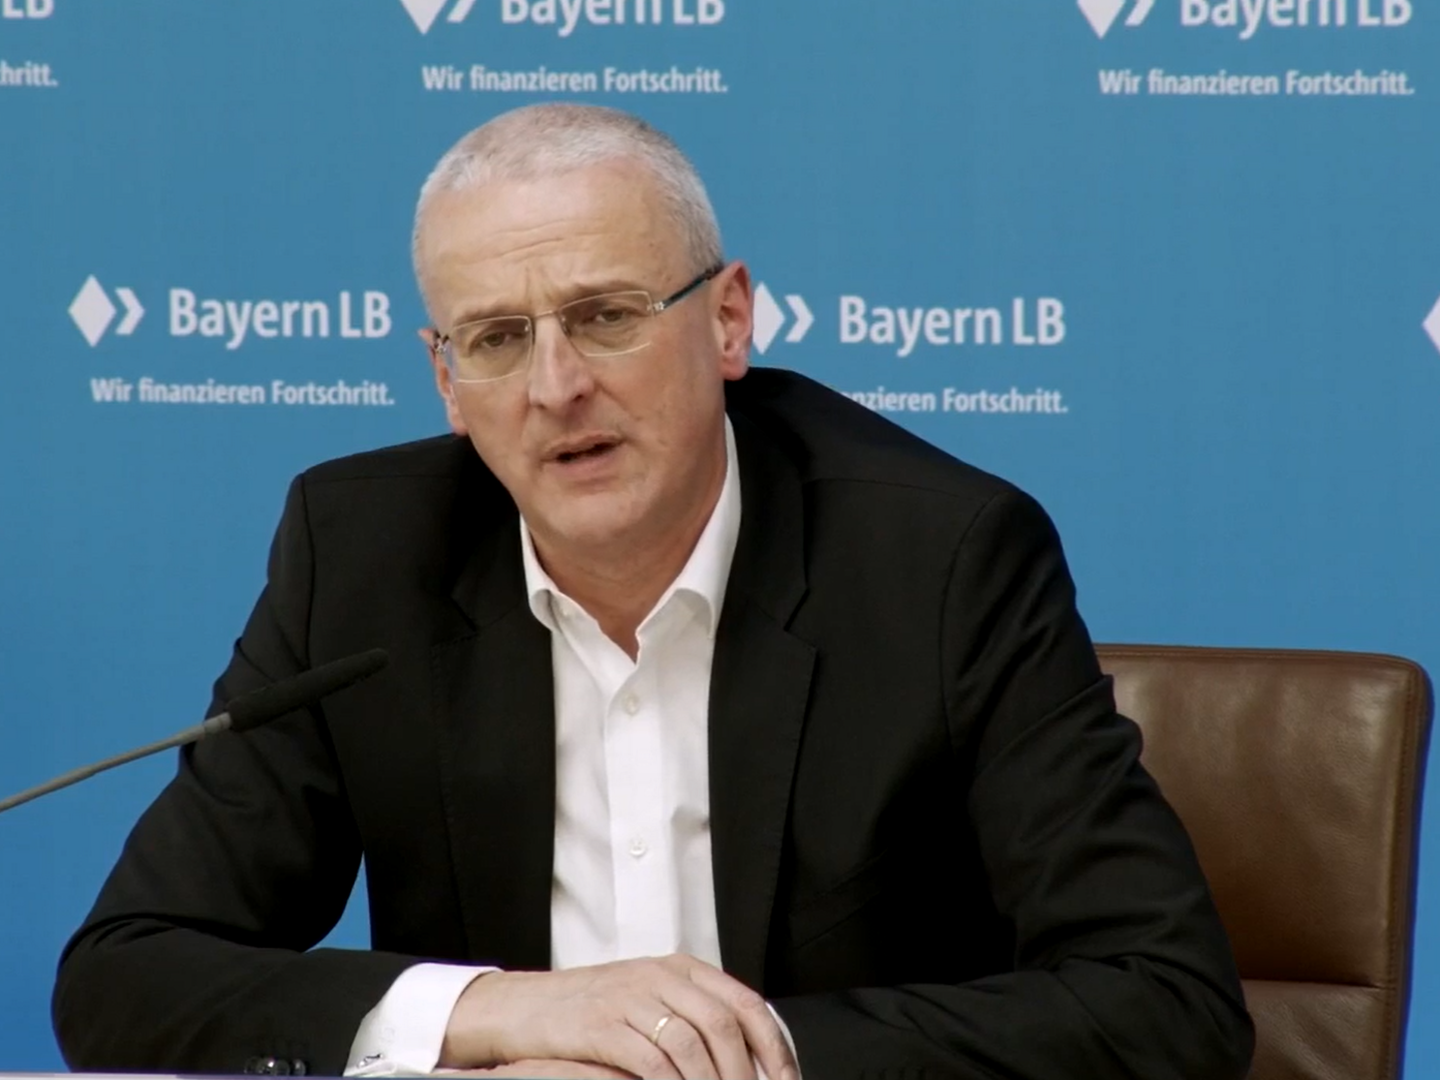 Stephan Winkelmeier ist bereits seit 2019 Vorstandsvorsitzender der BayernLB. | Foto: Screenshot FinanzBusiness